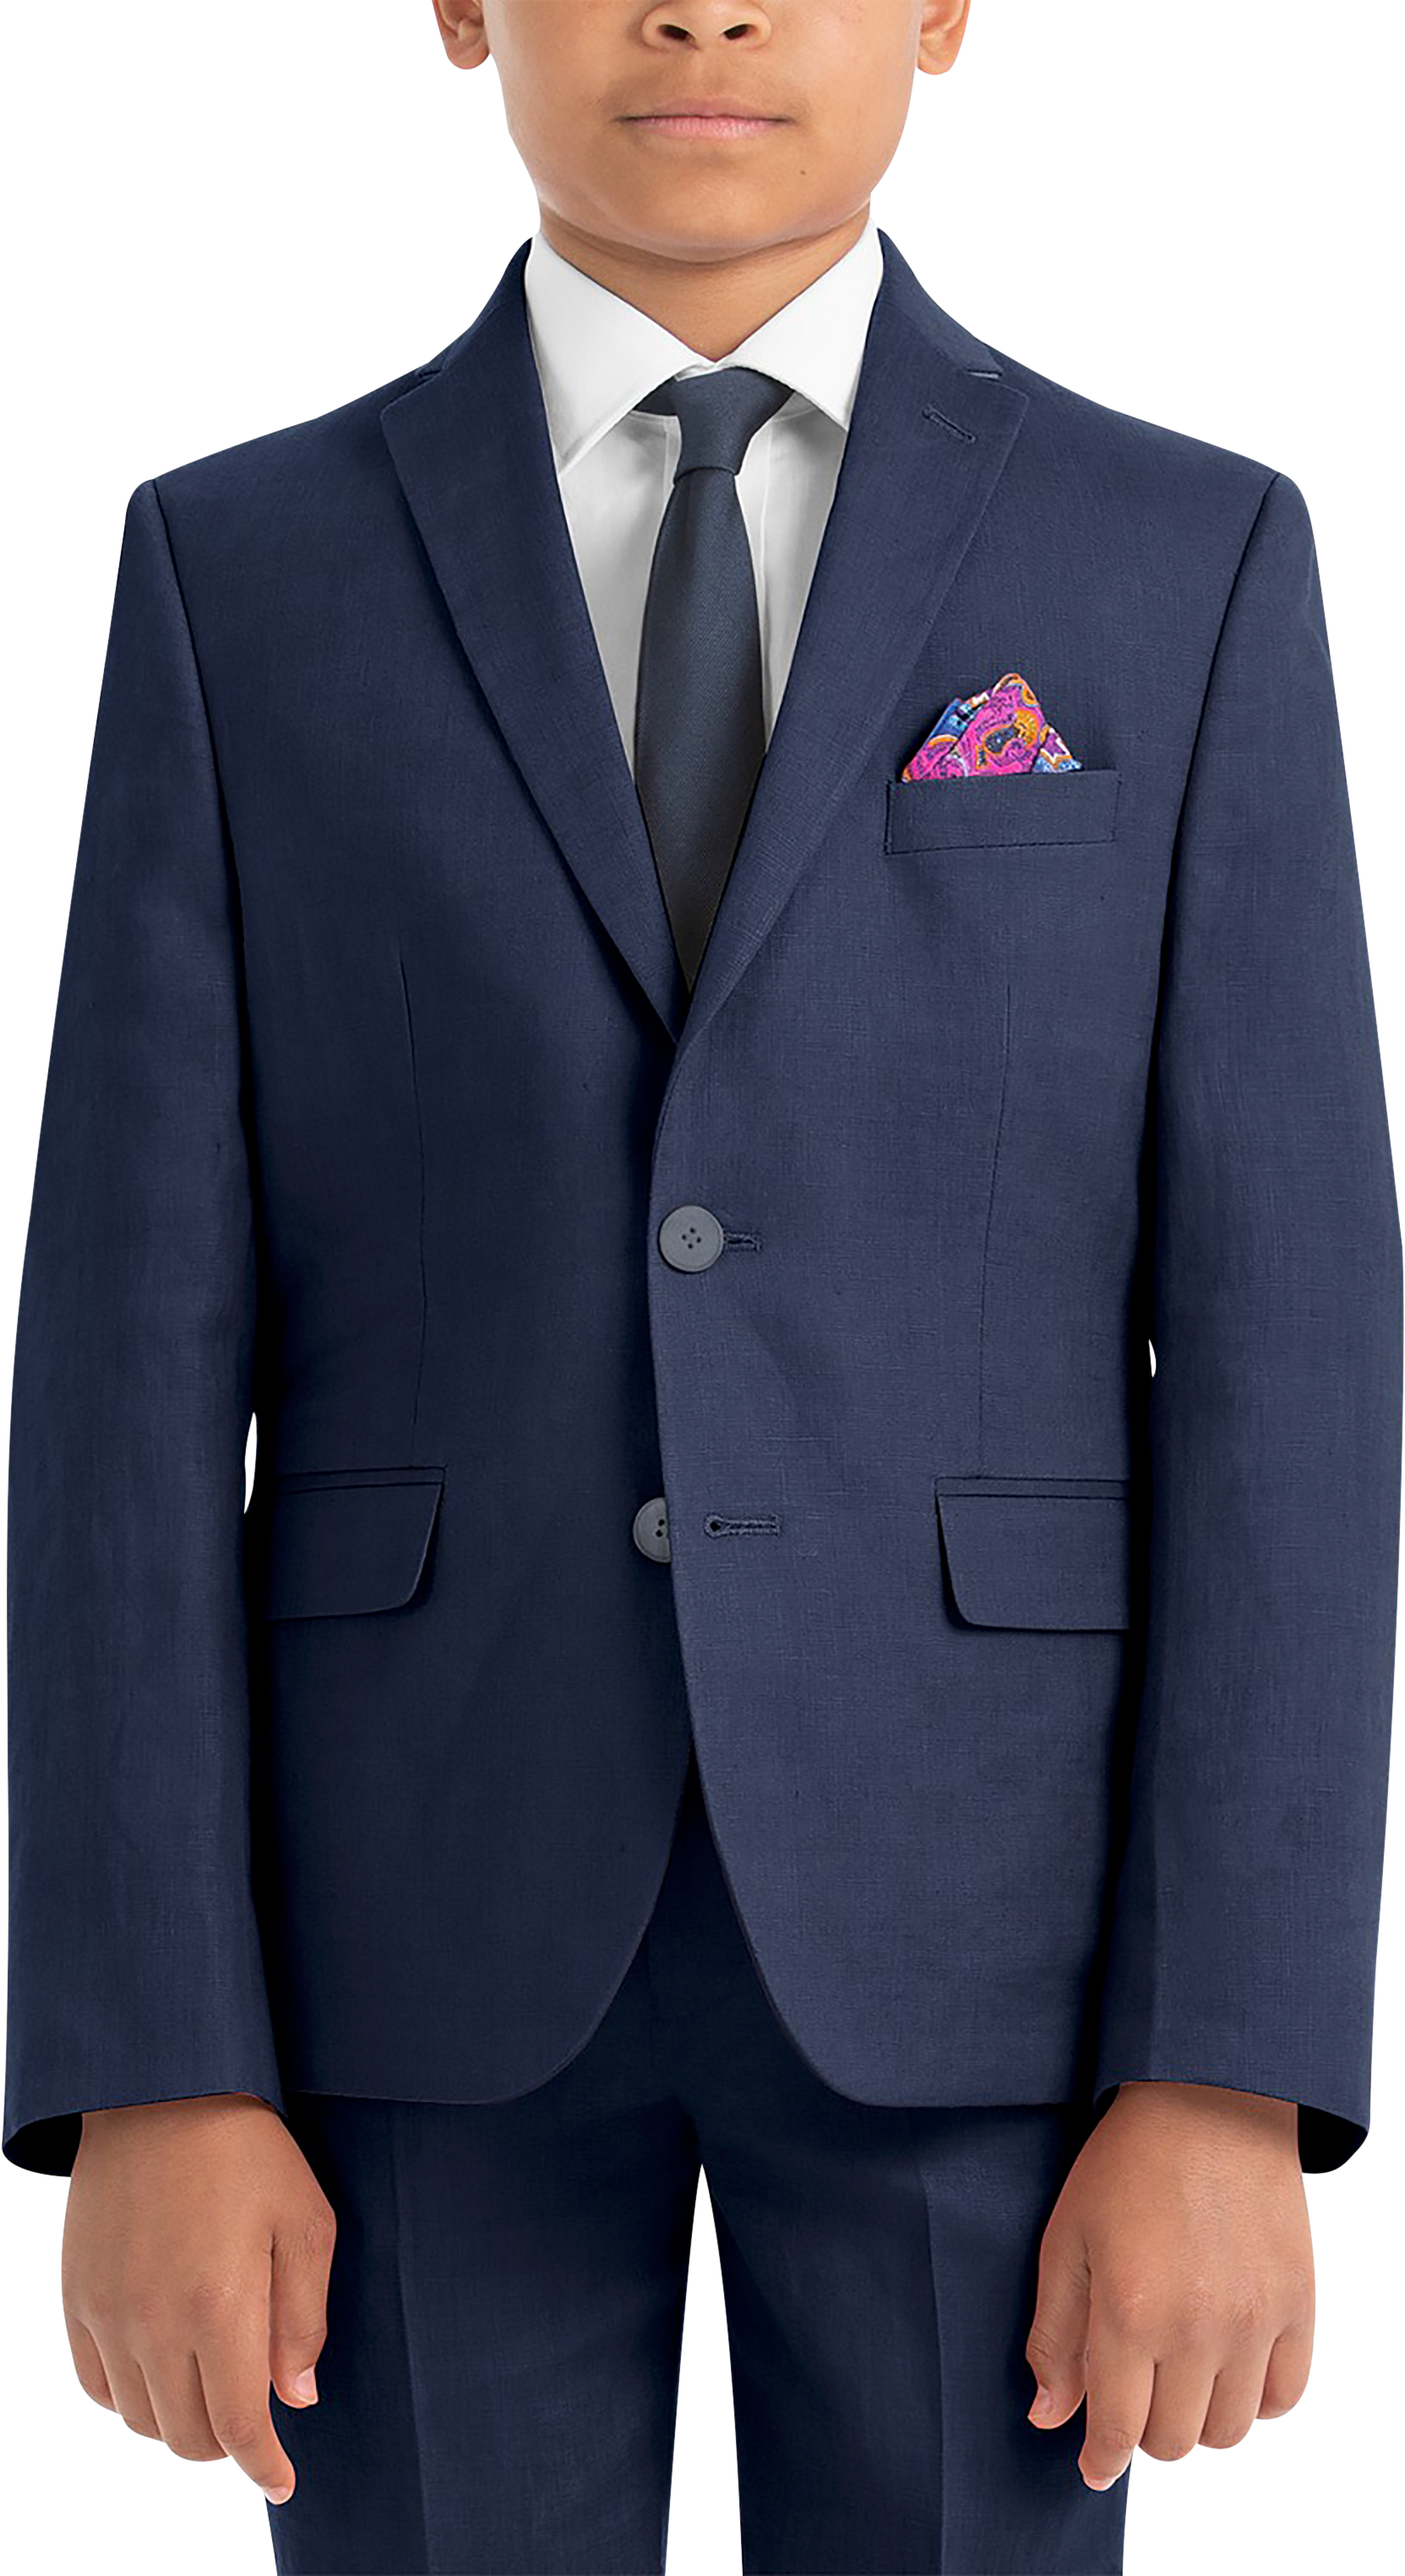 Lauren By Ralph Lauren Boys (Sizes 4-7) Suit Separates Coat, Navy